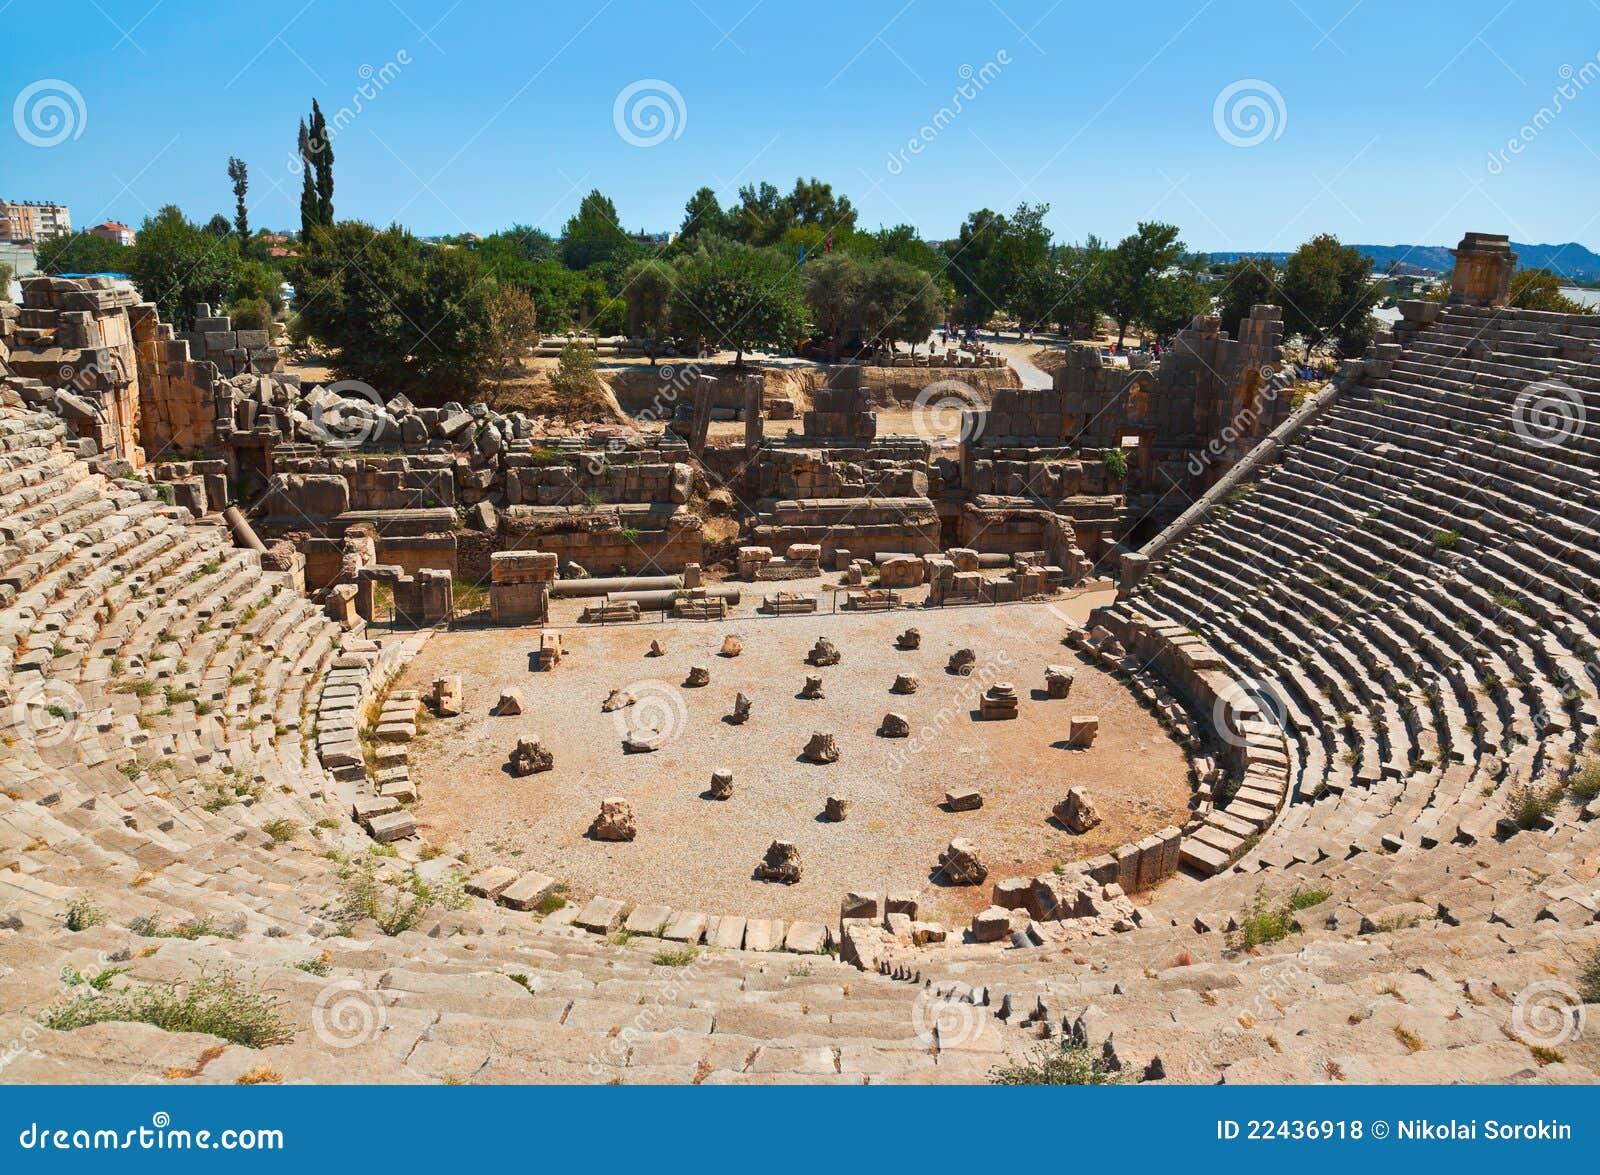 ancient amphitheater in myra, turkey